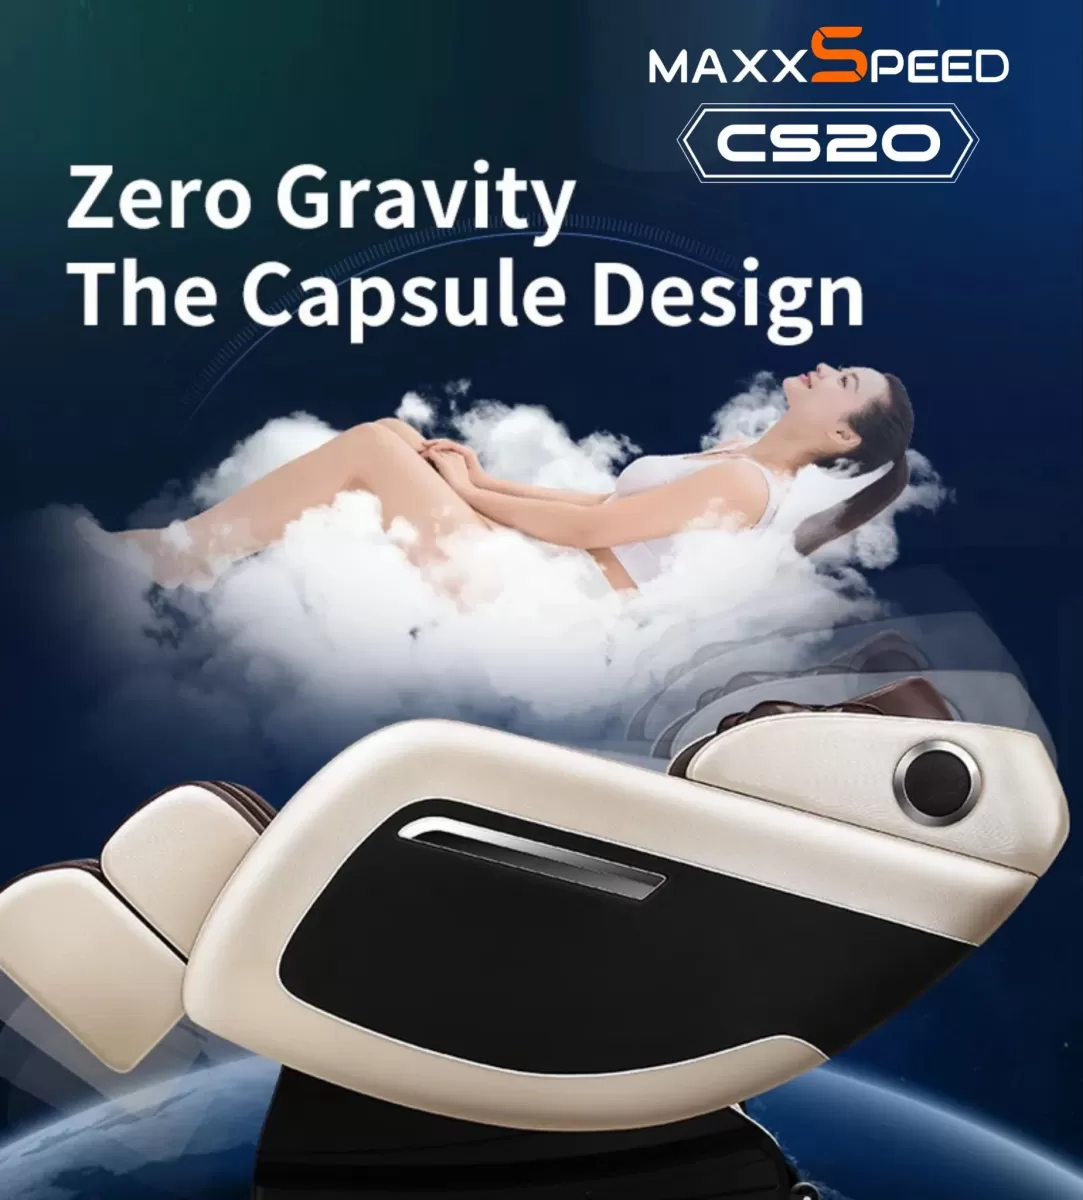 Chế độ Zero Gravity của Ghế Massage Azaki Maxxspeed CS20 - Trắng chính hãng